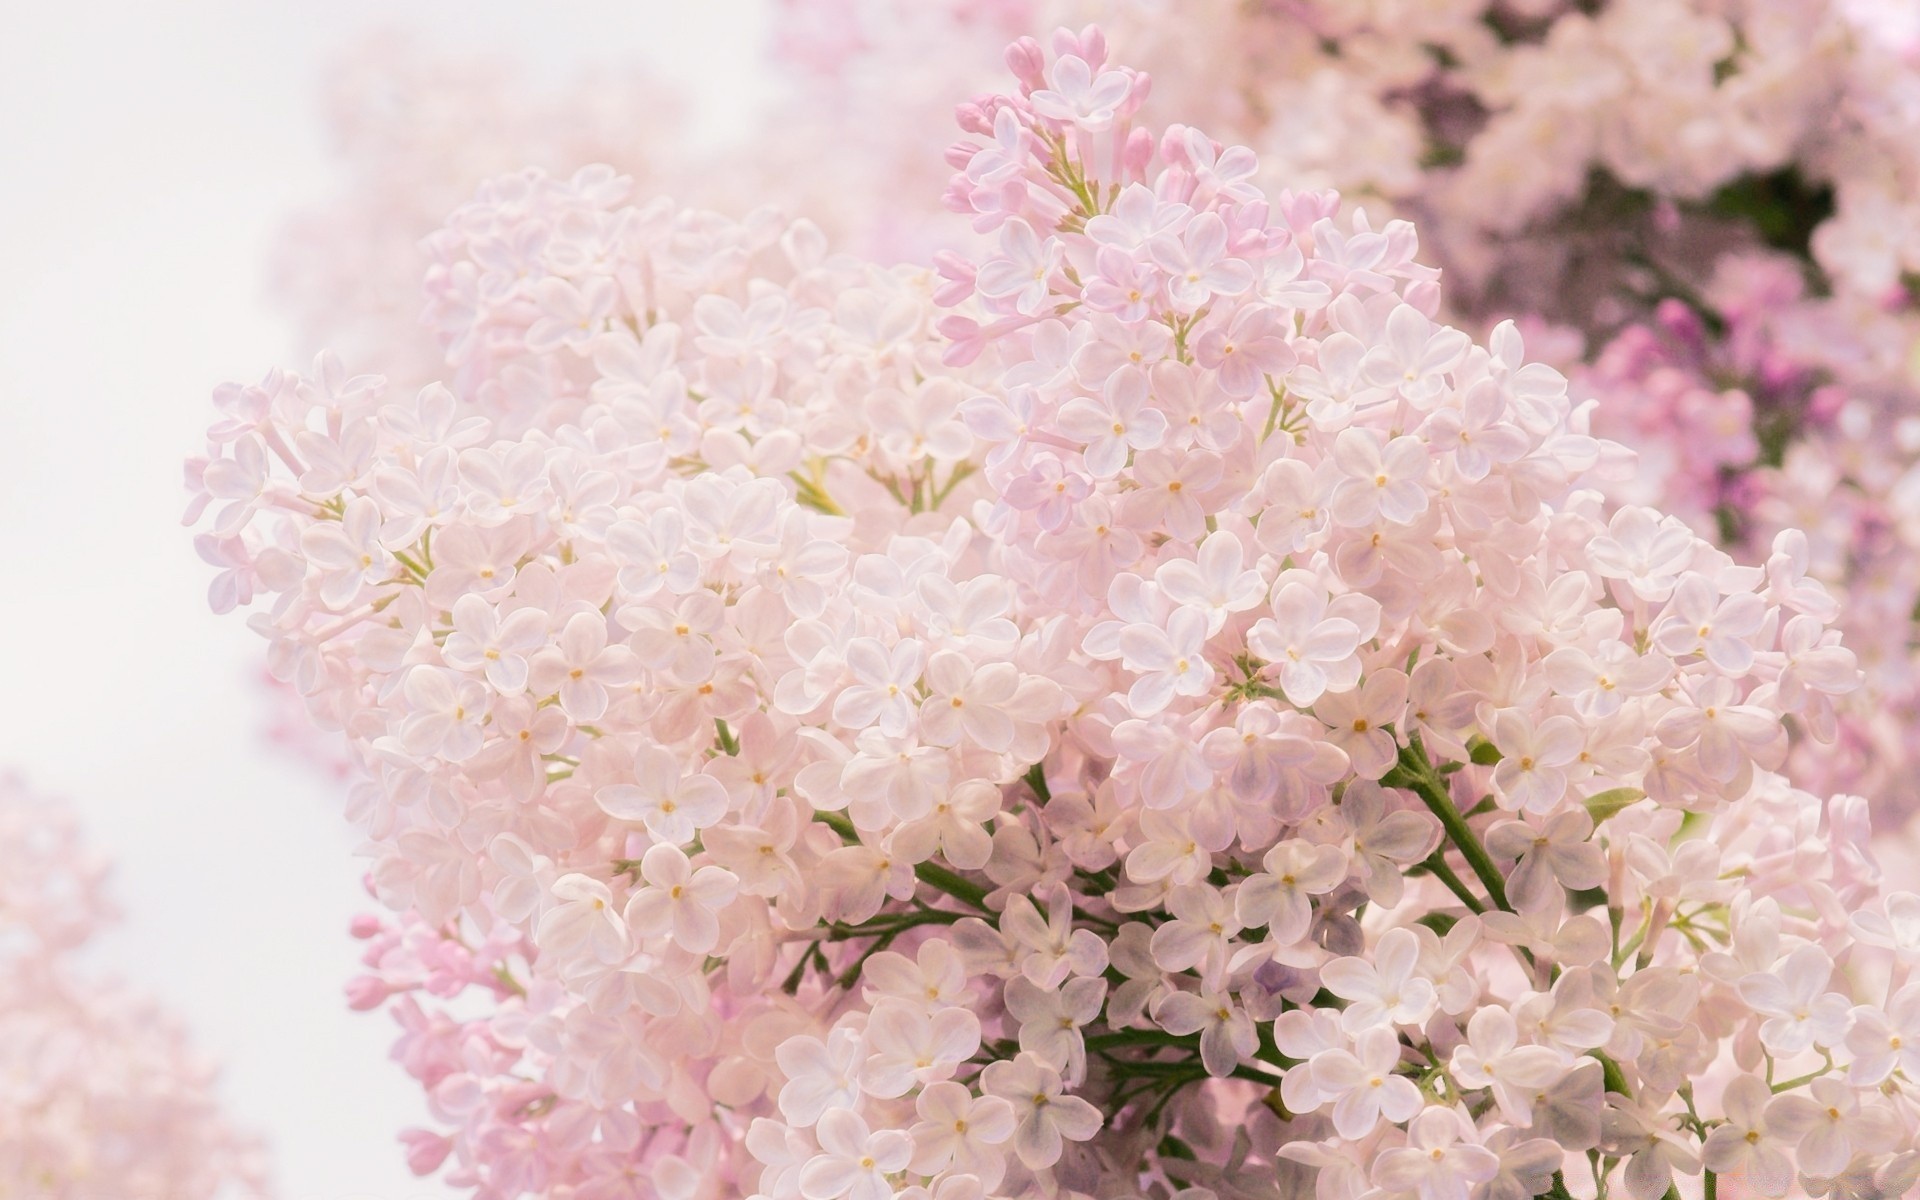 весна цветок флора природа цветочные лепесток блюминг сад филиал дерево цвет лист сезон рабочего стола красивые крупным планом вишня лаванда яркий весна